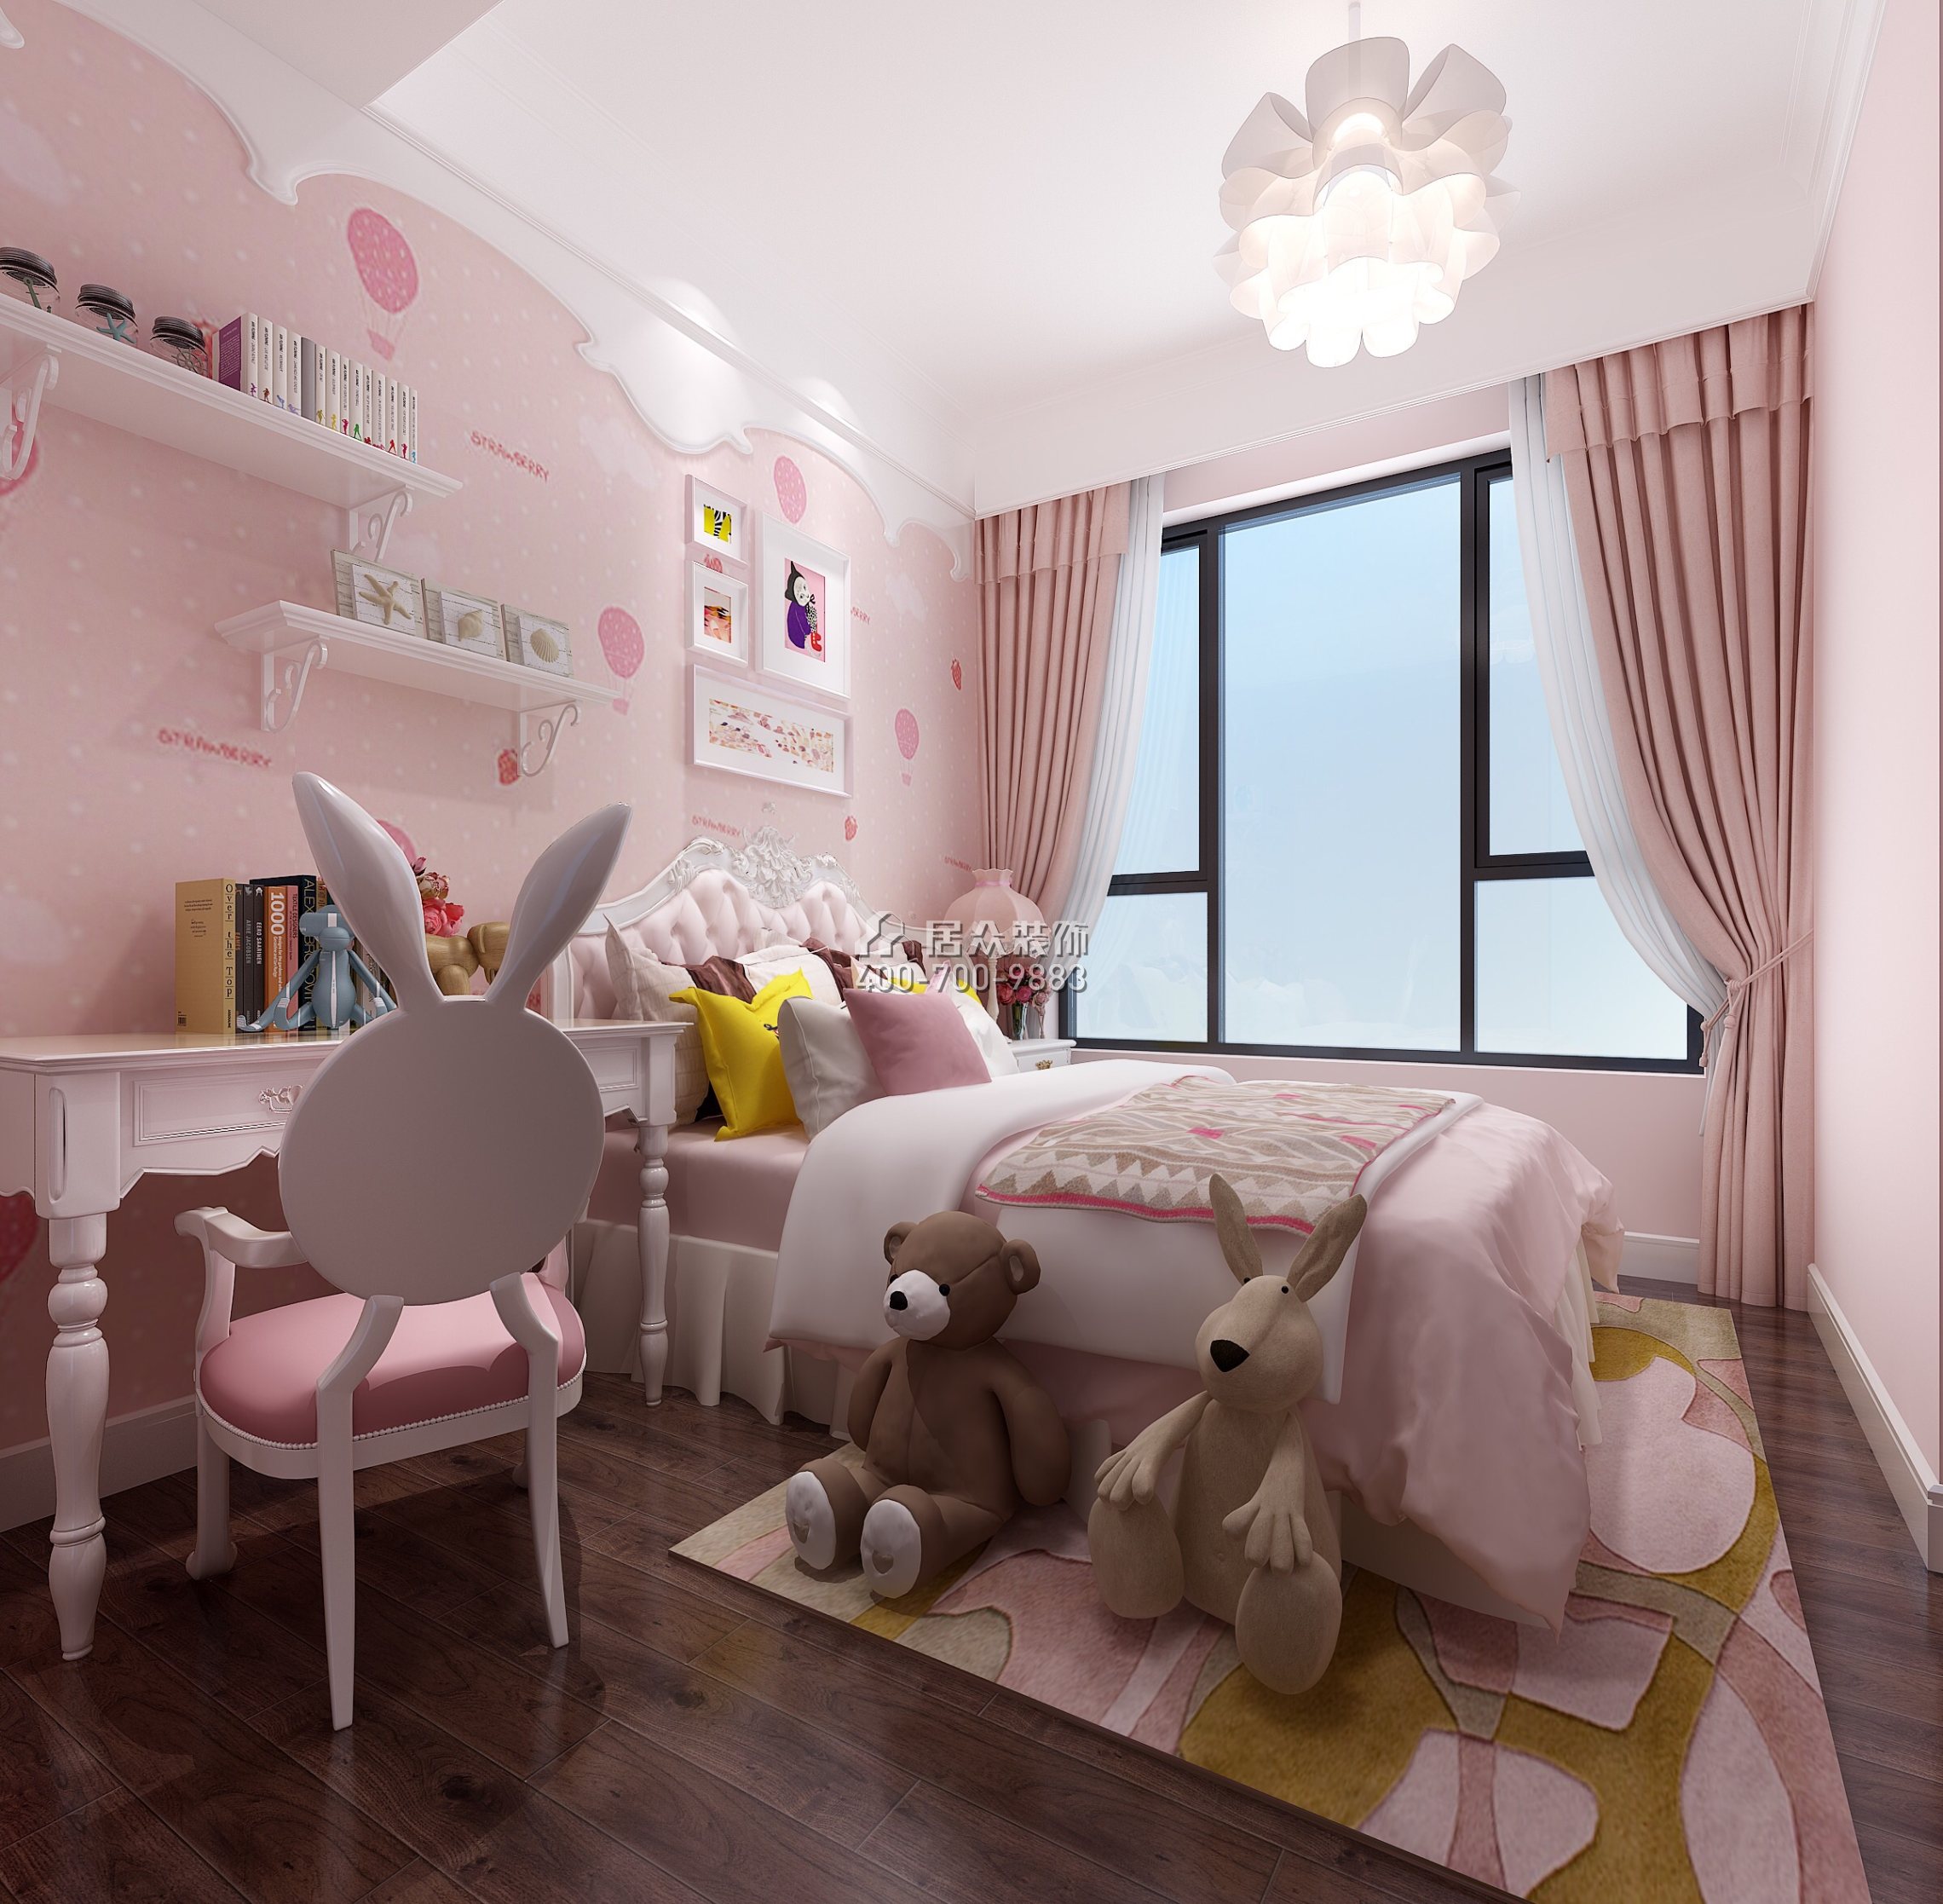 廣州華發四季182平方米混搭風格平層戶型兒童房裝修效果圖